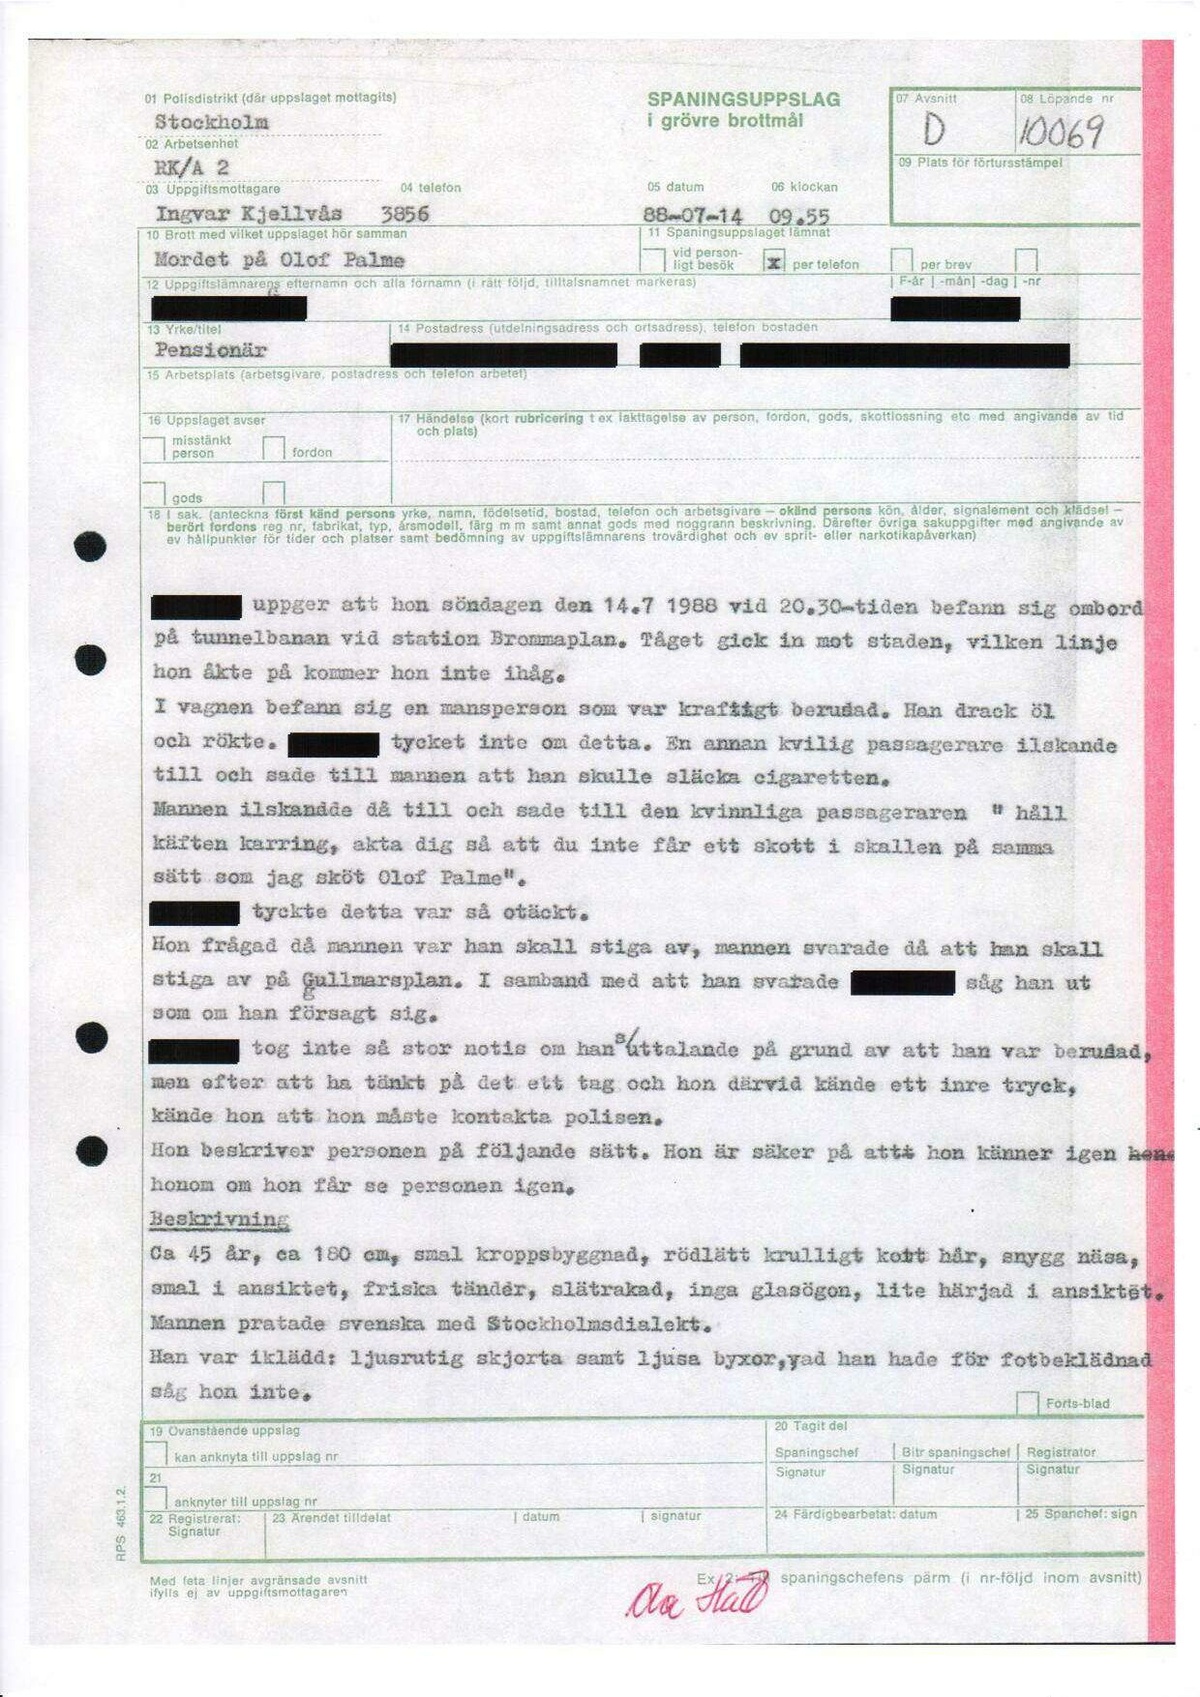 Pol-1988-07-14 0955 D10069-00 Erkännanden Palmemordet.pdf